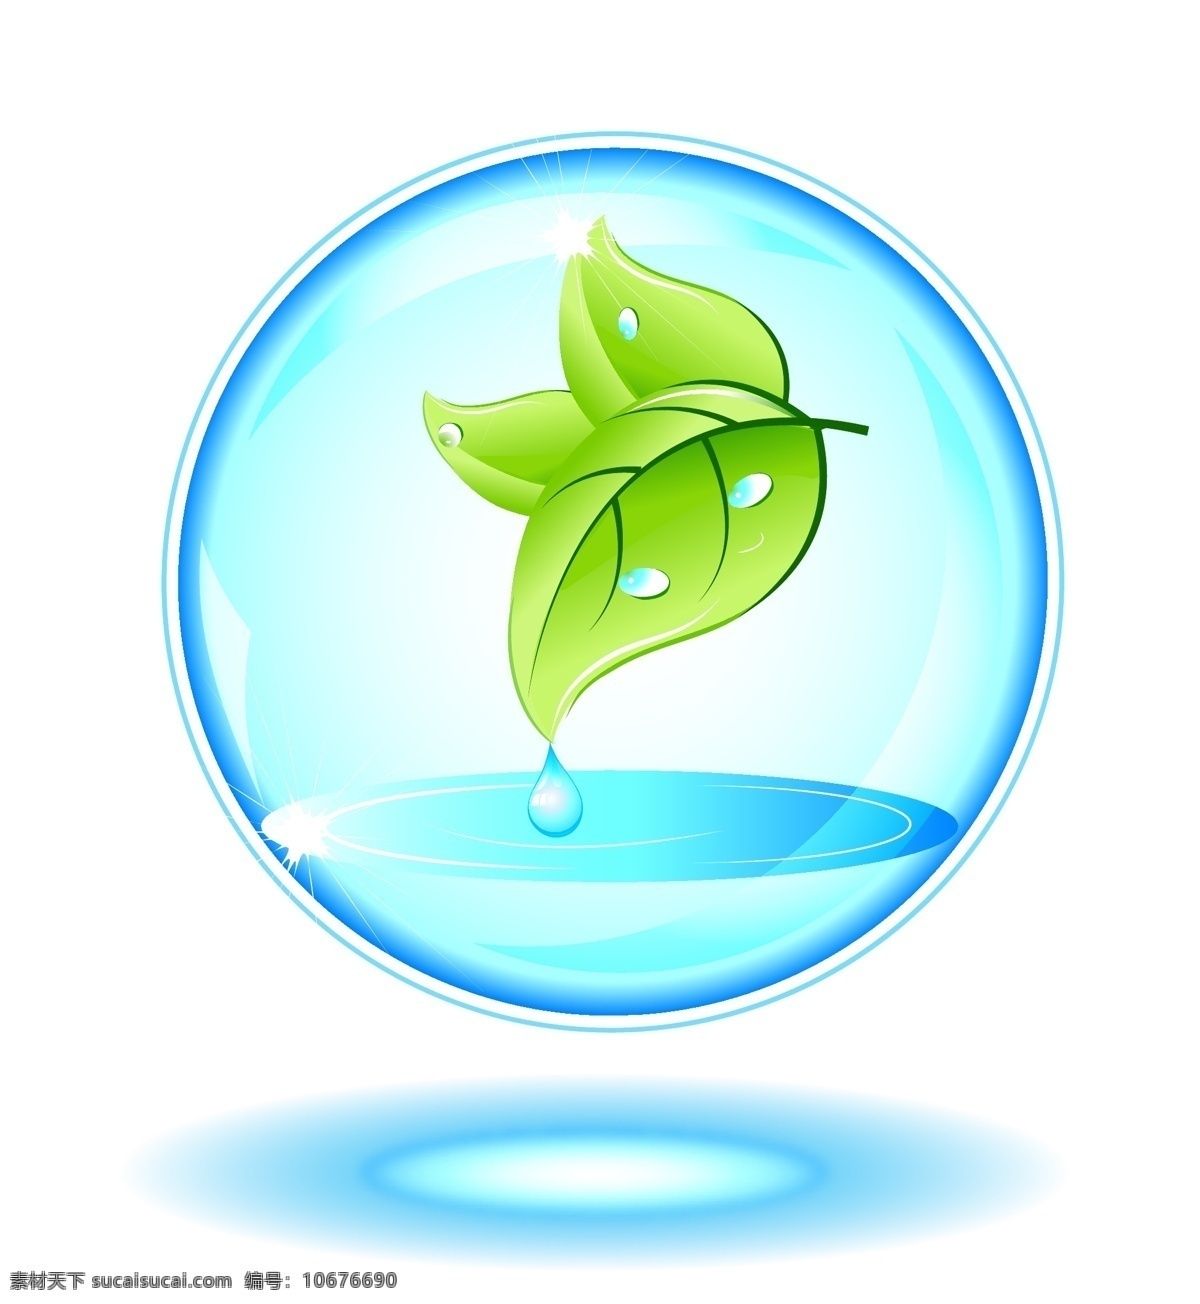 自然水珠叶子 自然 水珠 叶子 水泡 夏天 露水 圆形 水 春天 矢量元素 卡通设计